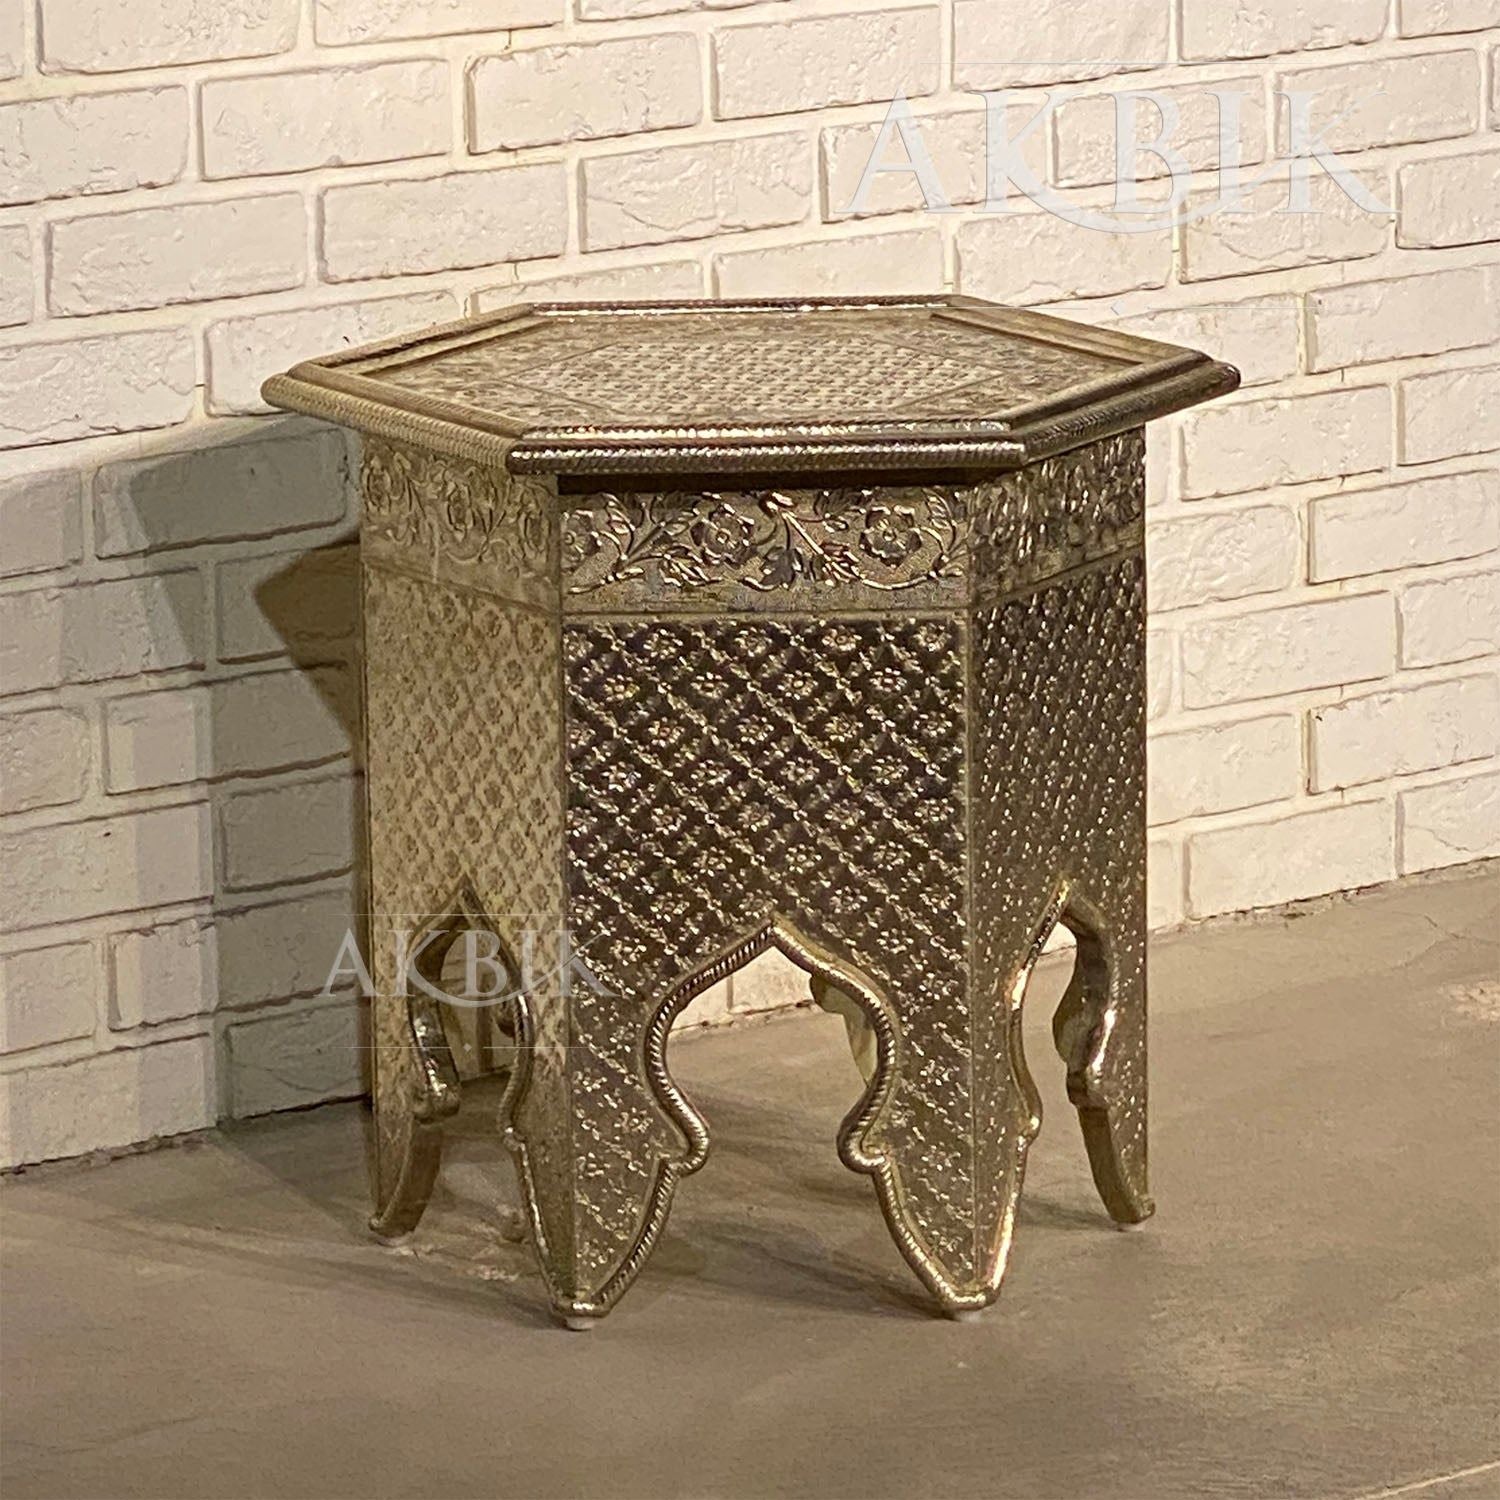 Moroccan Flare Side Table - AKBIK Furniture & Design